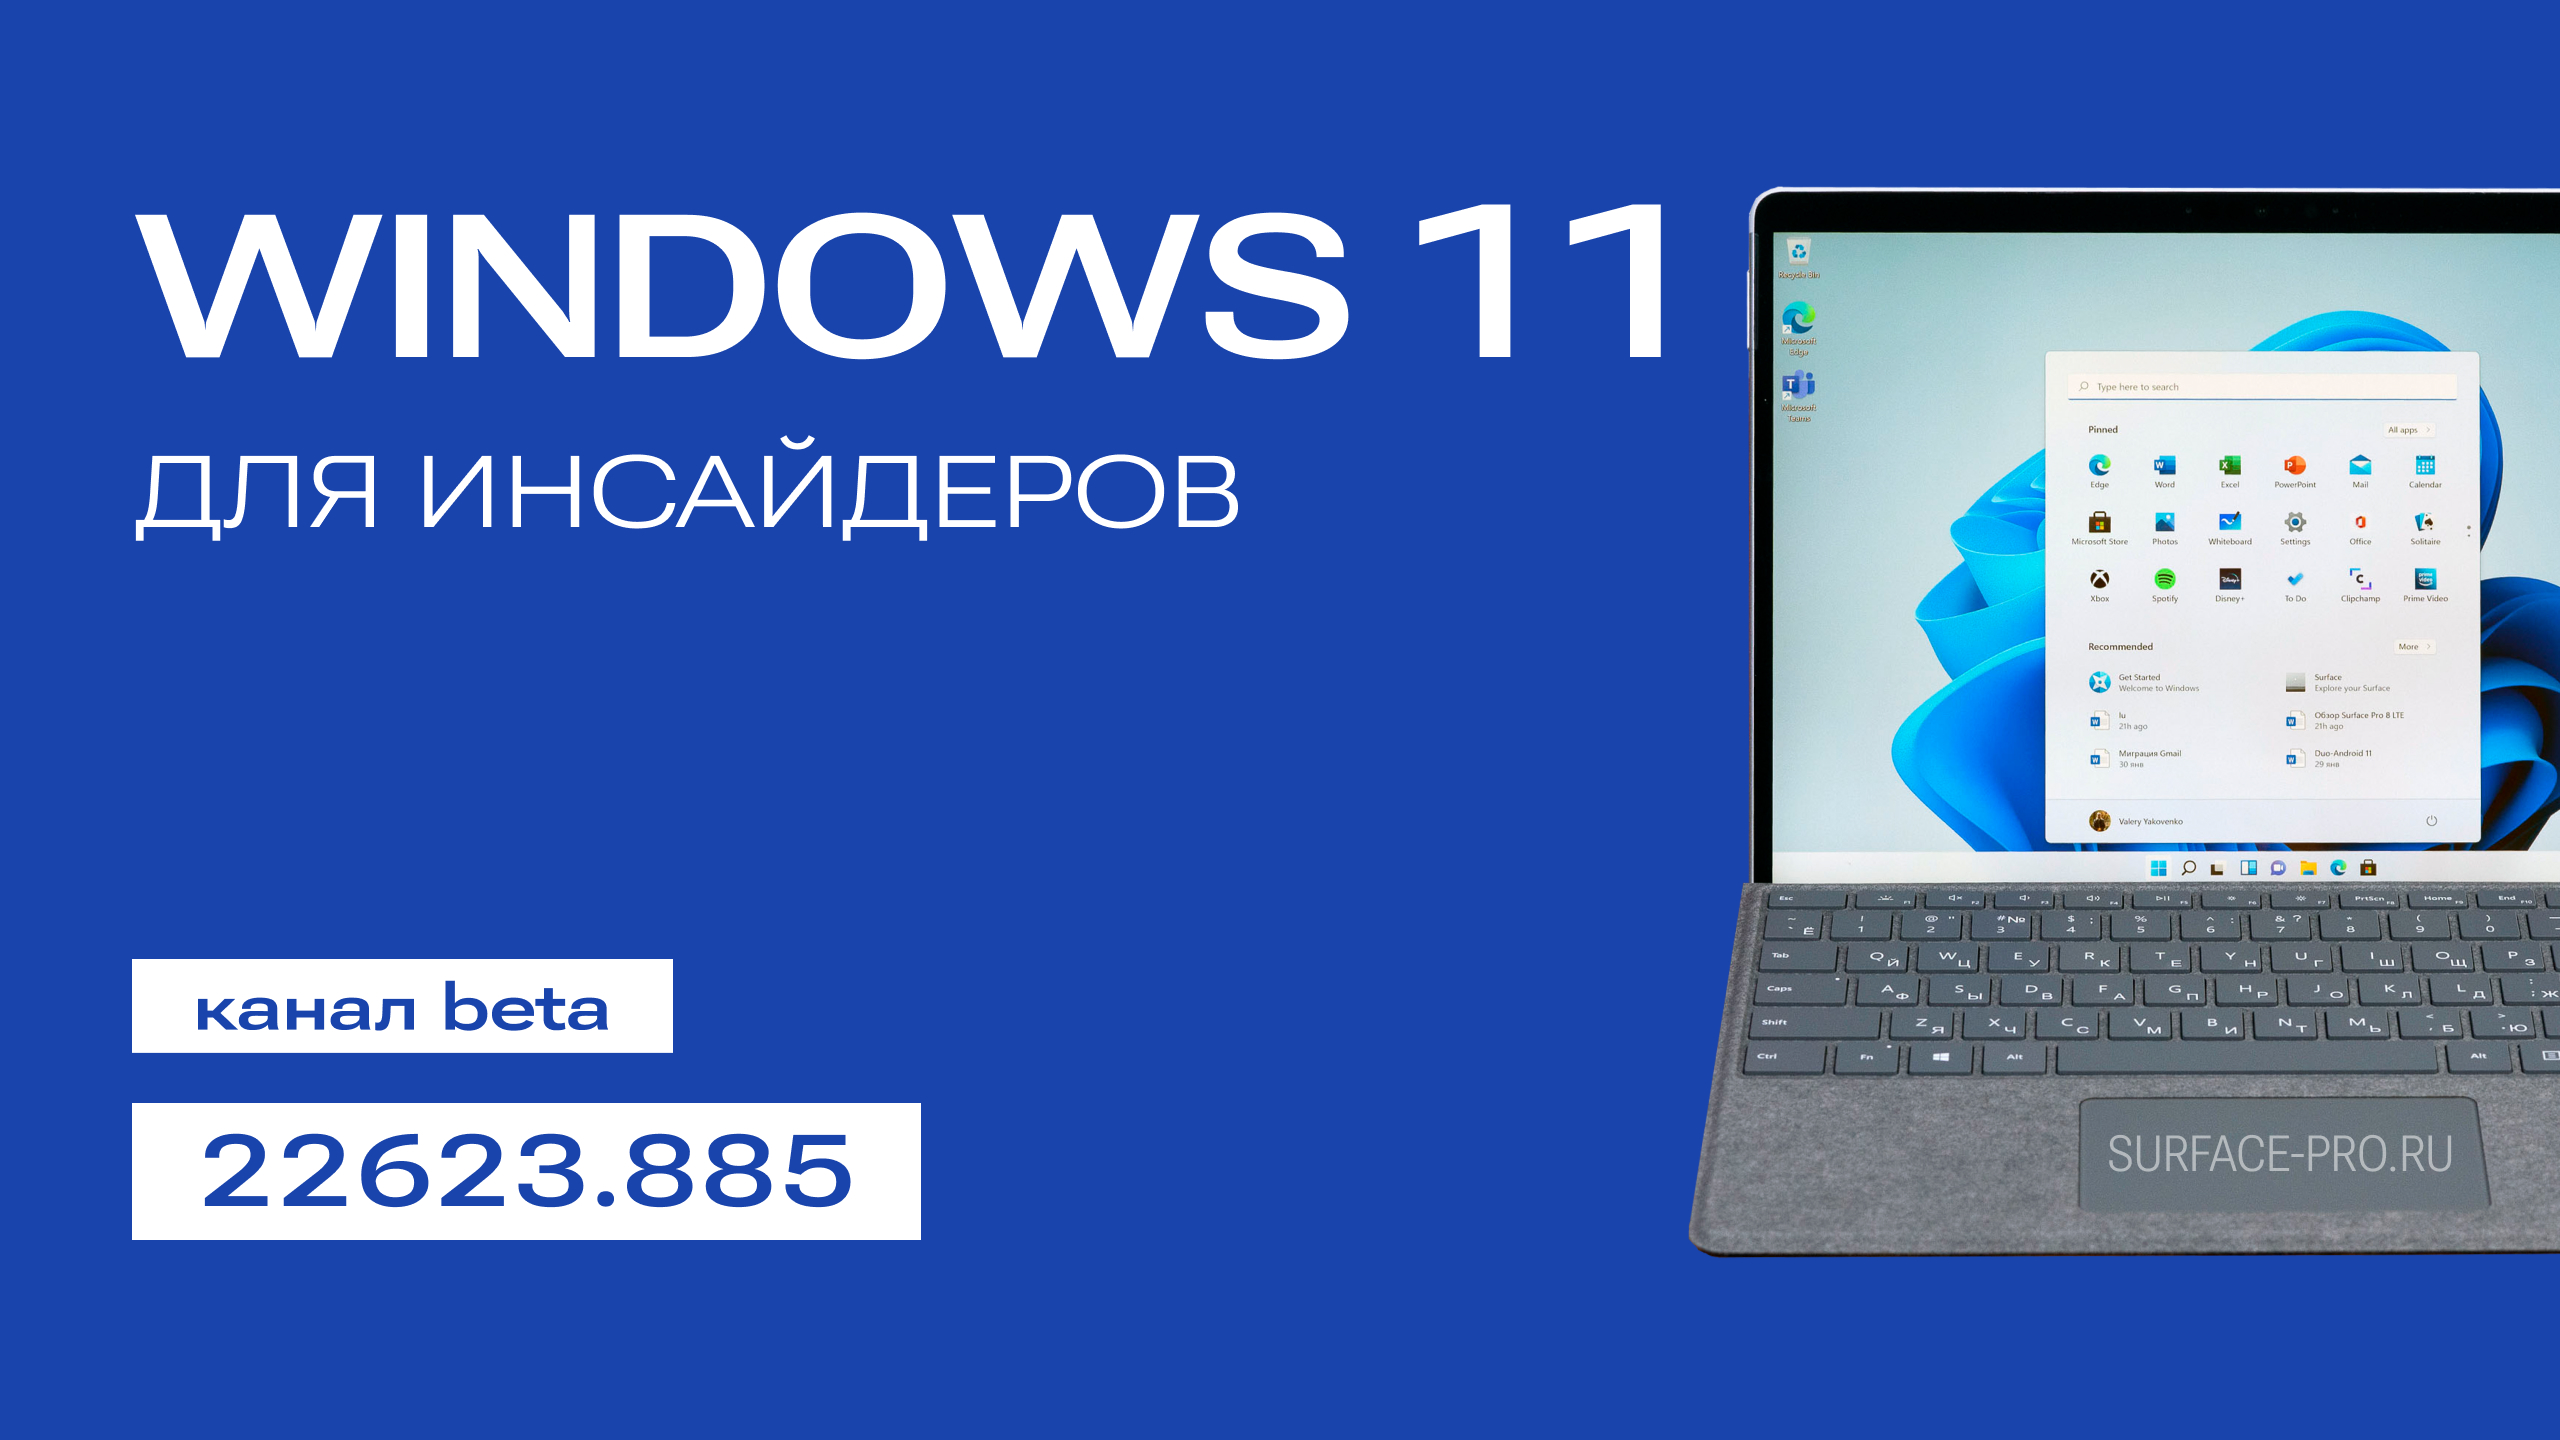 Сборки виндовс 11 64. Windows 11. Windows 11 Pro. Windows 11 сборка. Виндовс 11 купить.